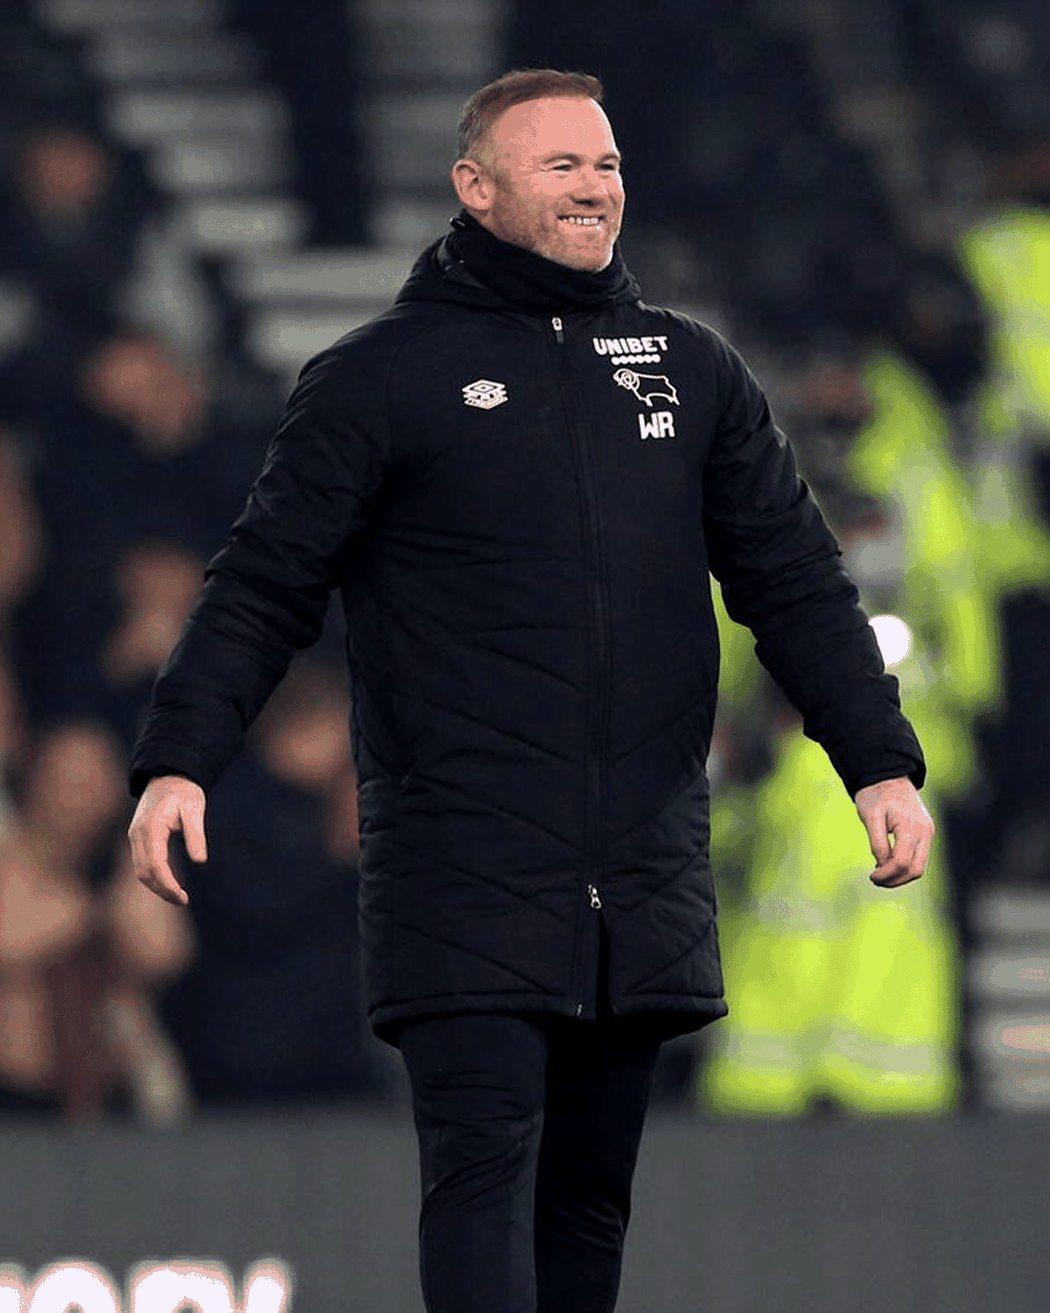 Vysmátý Wayne Rooney během zápasu